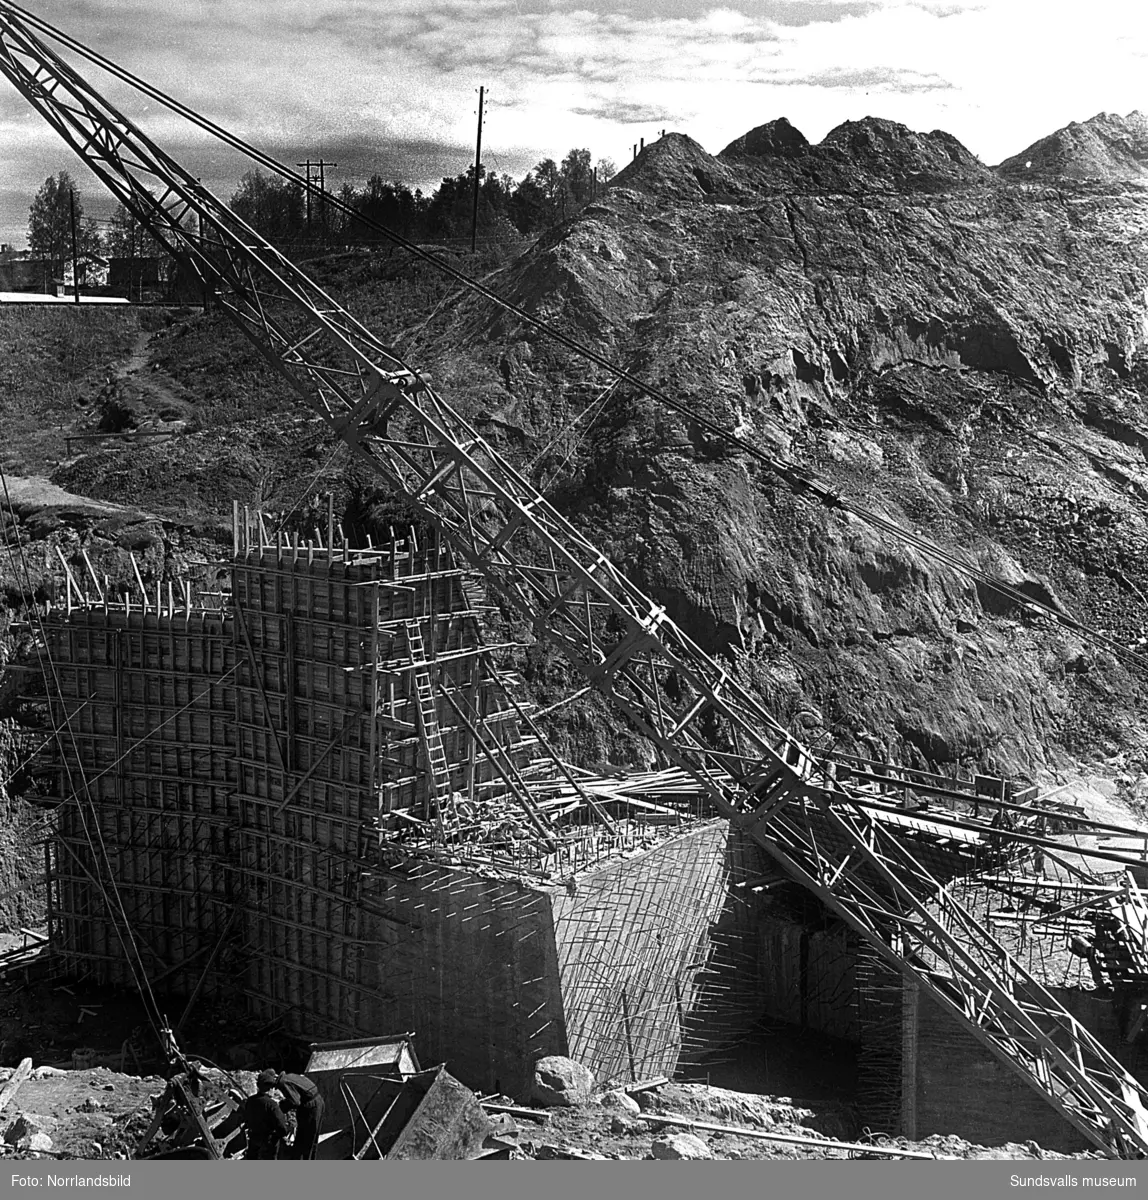 Bygget av kraftverket i Bergeforsen pågår och samtidigt rivs det hus som ligger uppströms fördämningen.